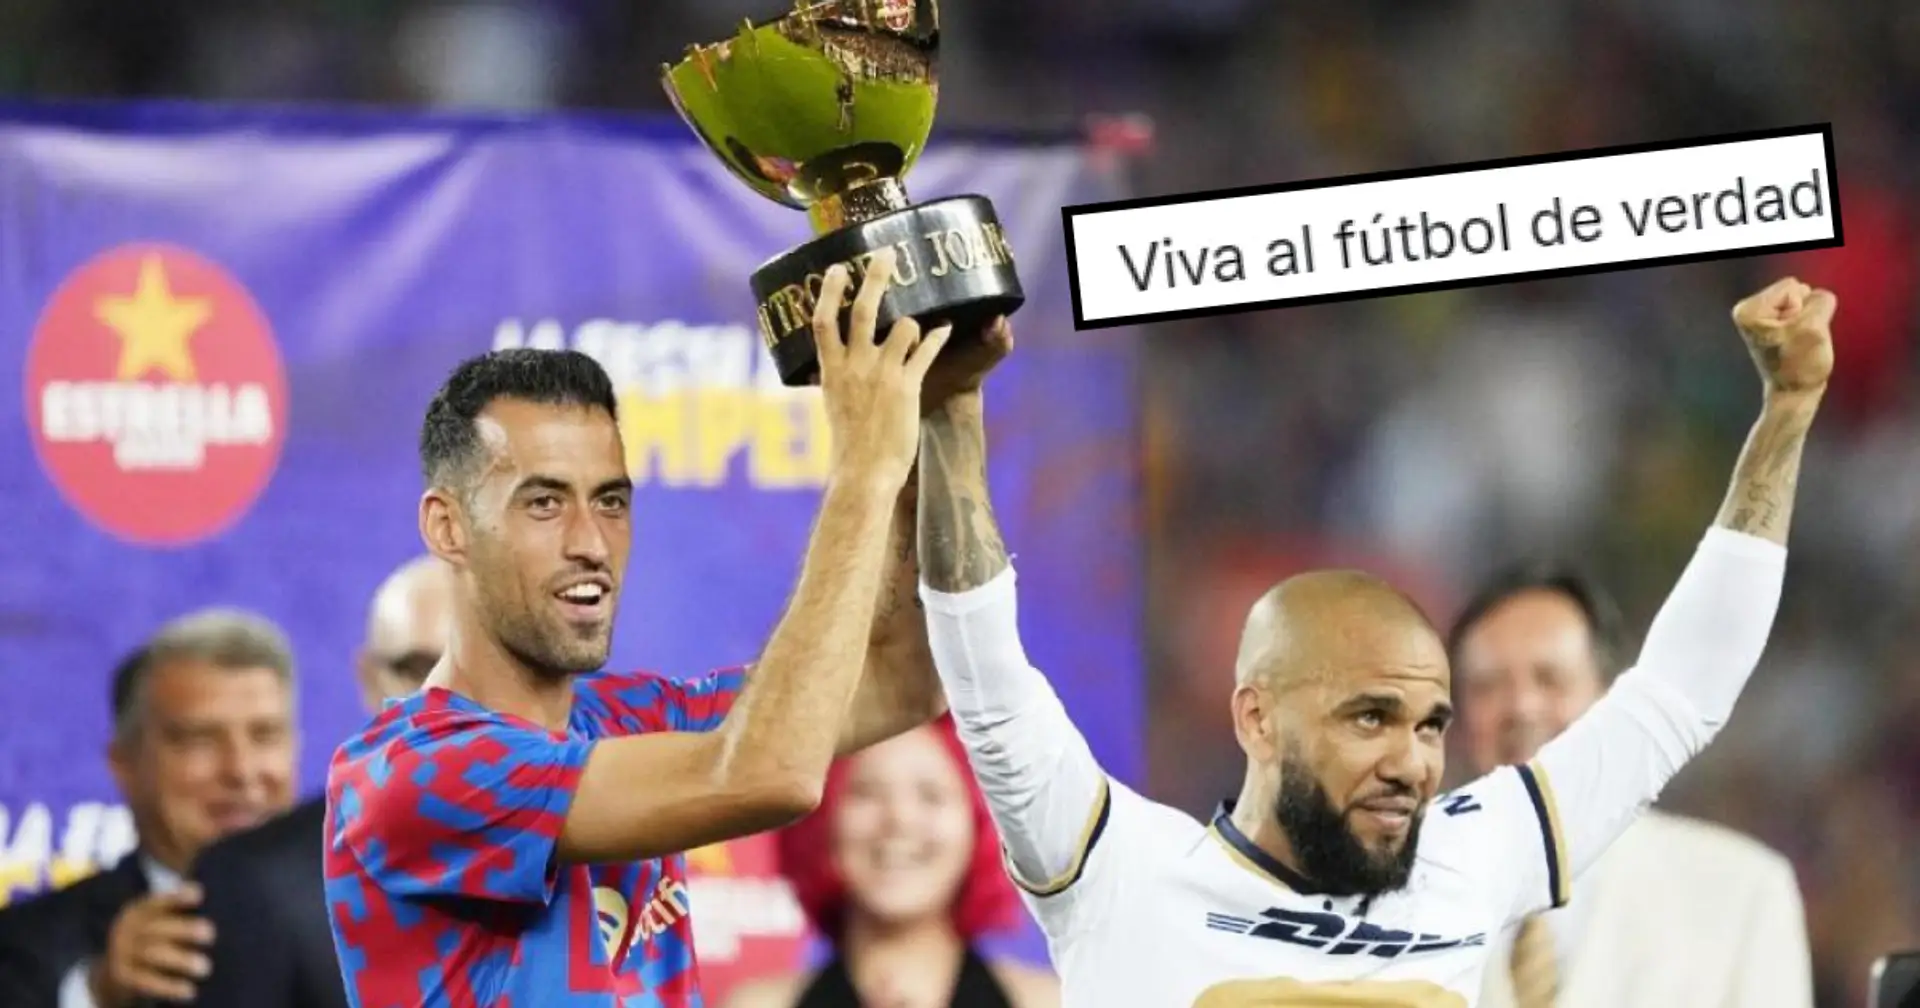 'Long live real football' - Dani Alves praises Busquets on social media